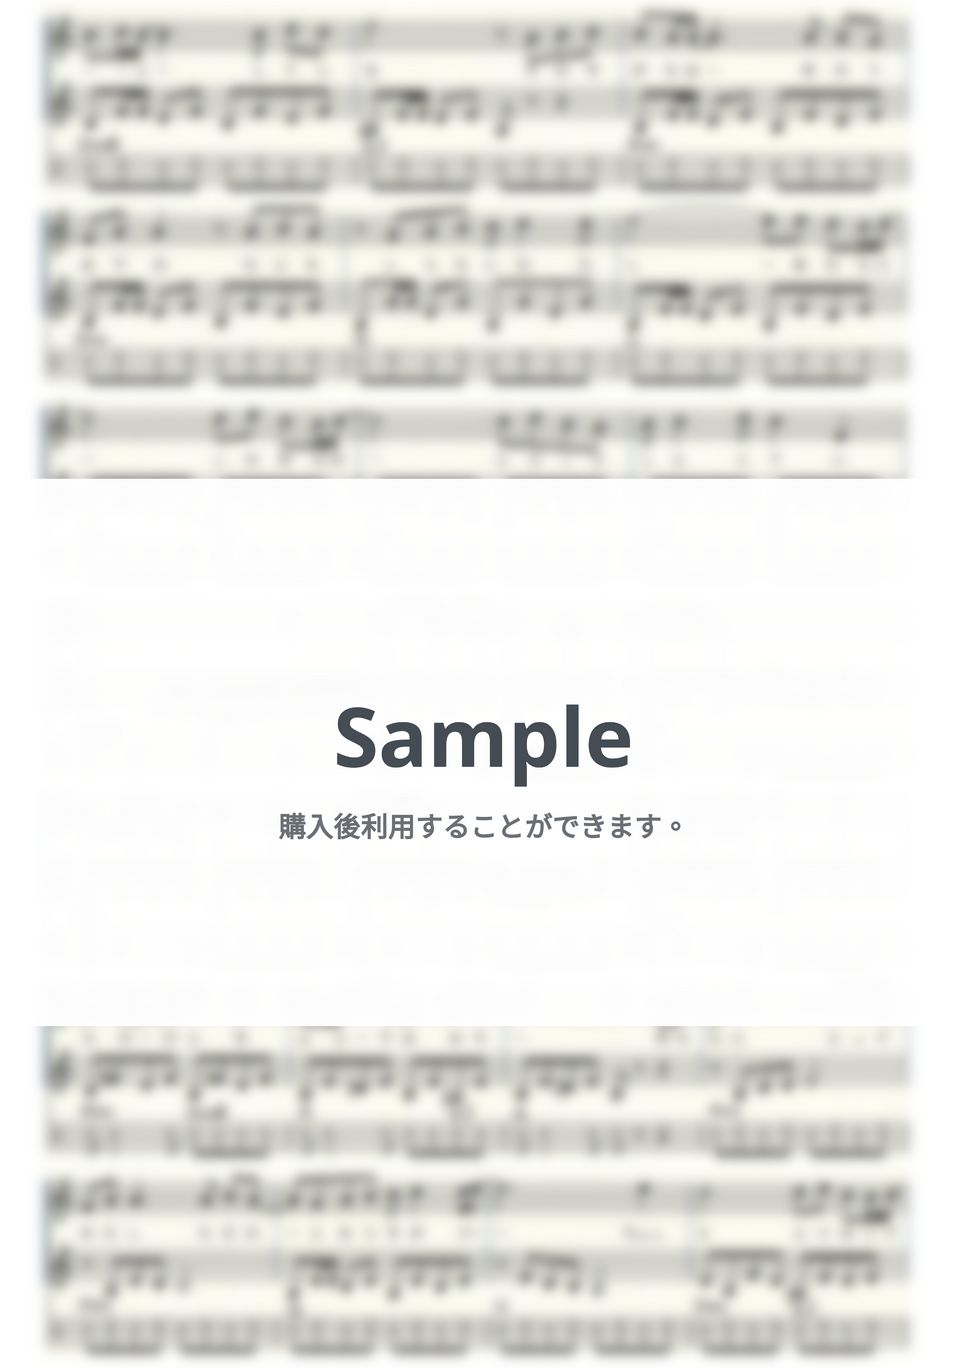 久保田早紀 - 異邦人 (ｳｸﾚﾚｱﾝｻﾝﾌﾞﾙ/High-G・Low-G/上級) by ukulelepapa